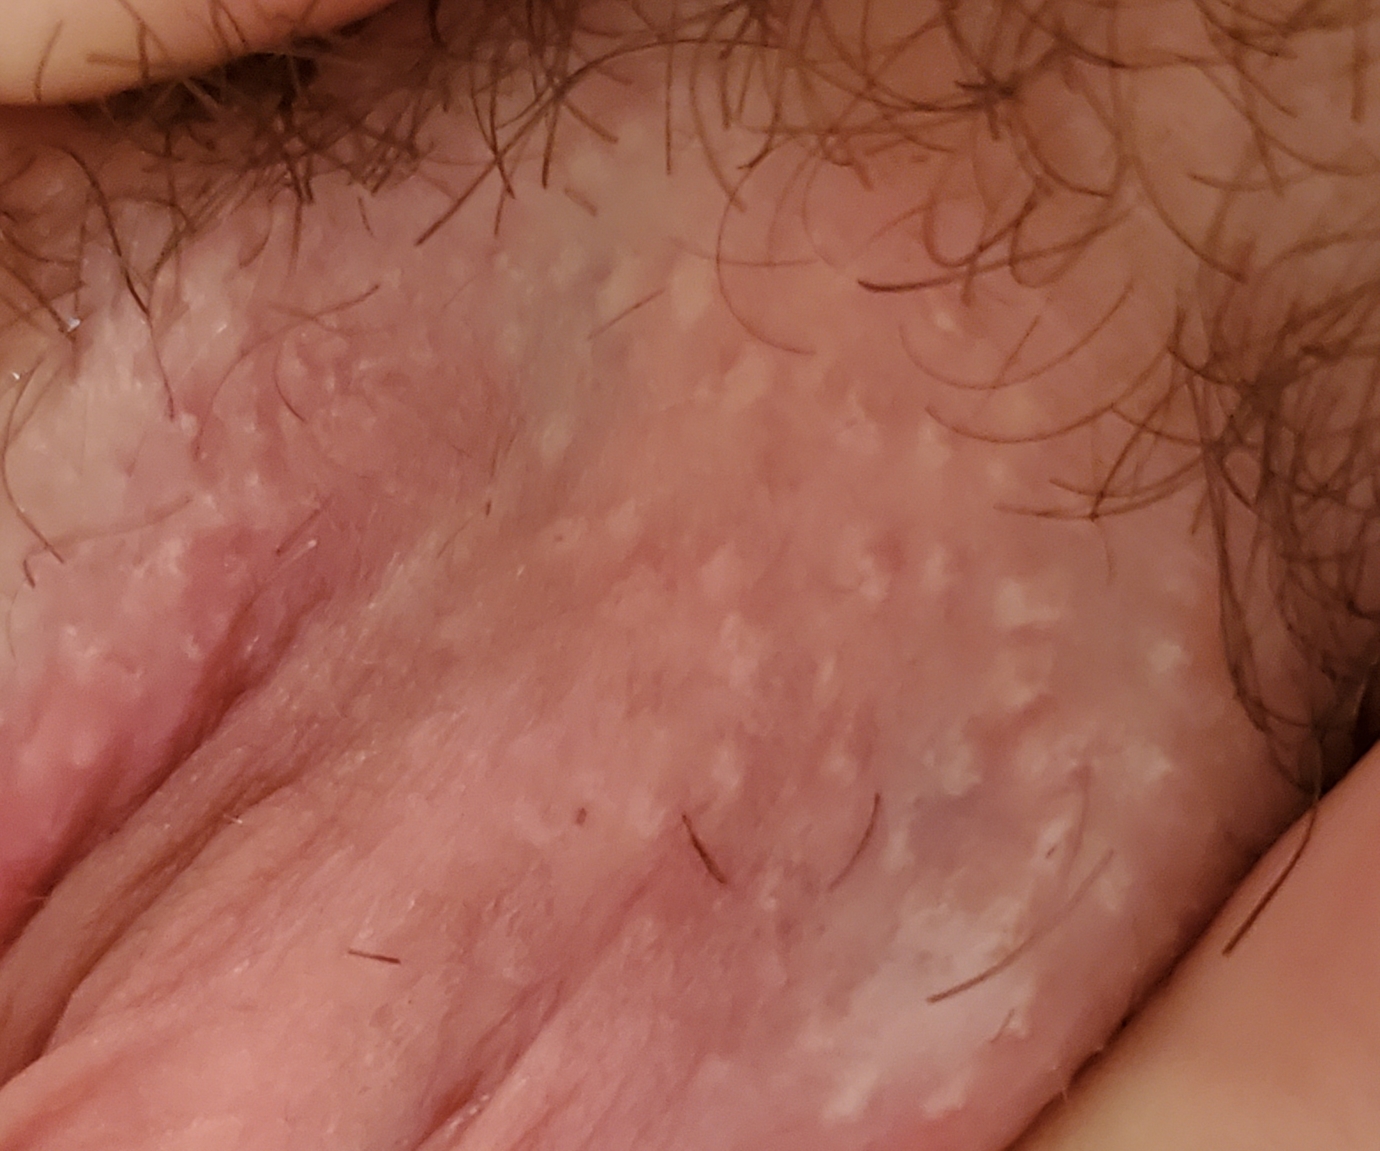 wondering if this looks like herpes? 